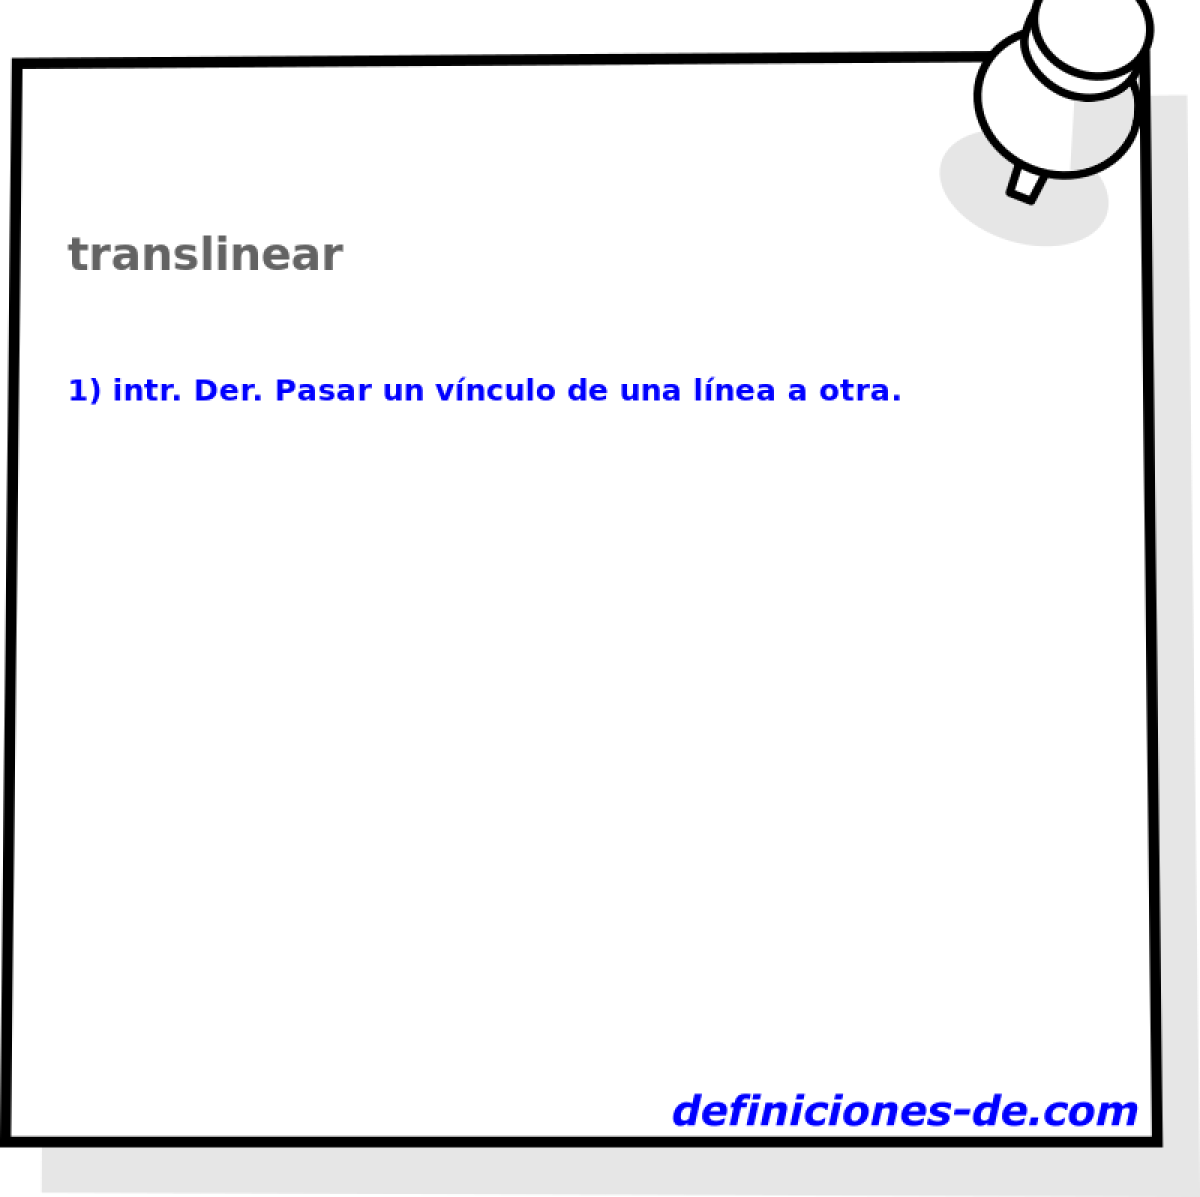 translinear 